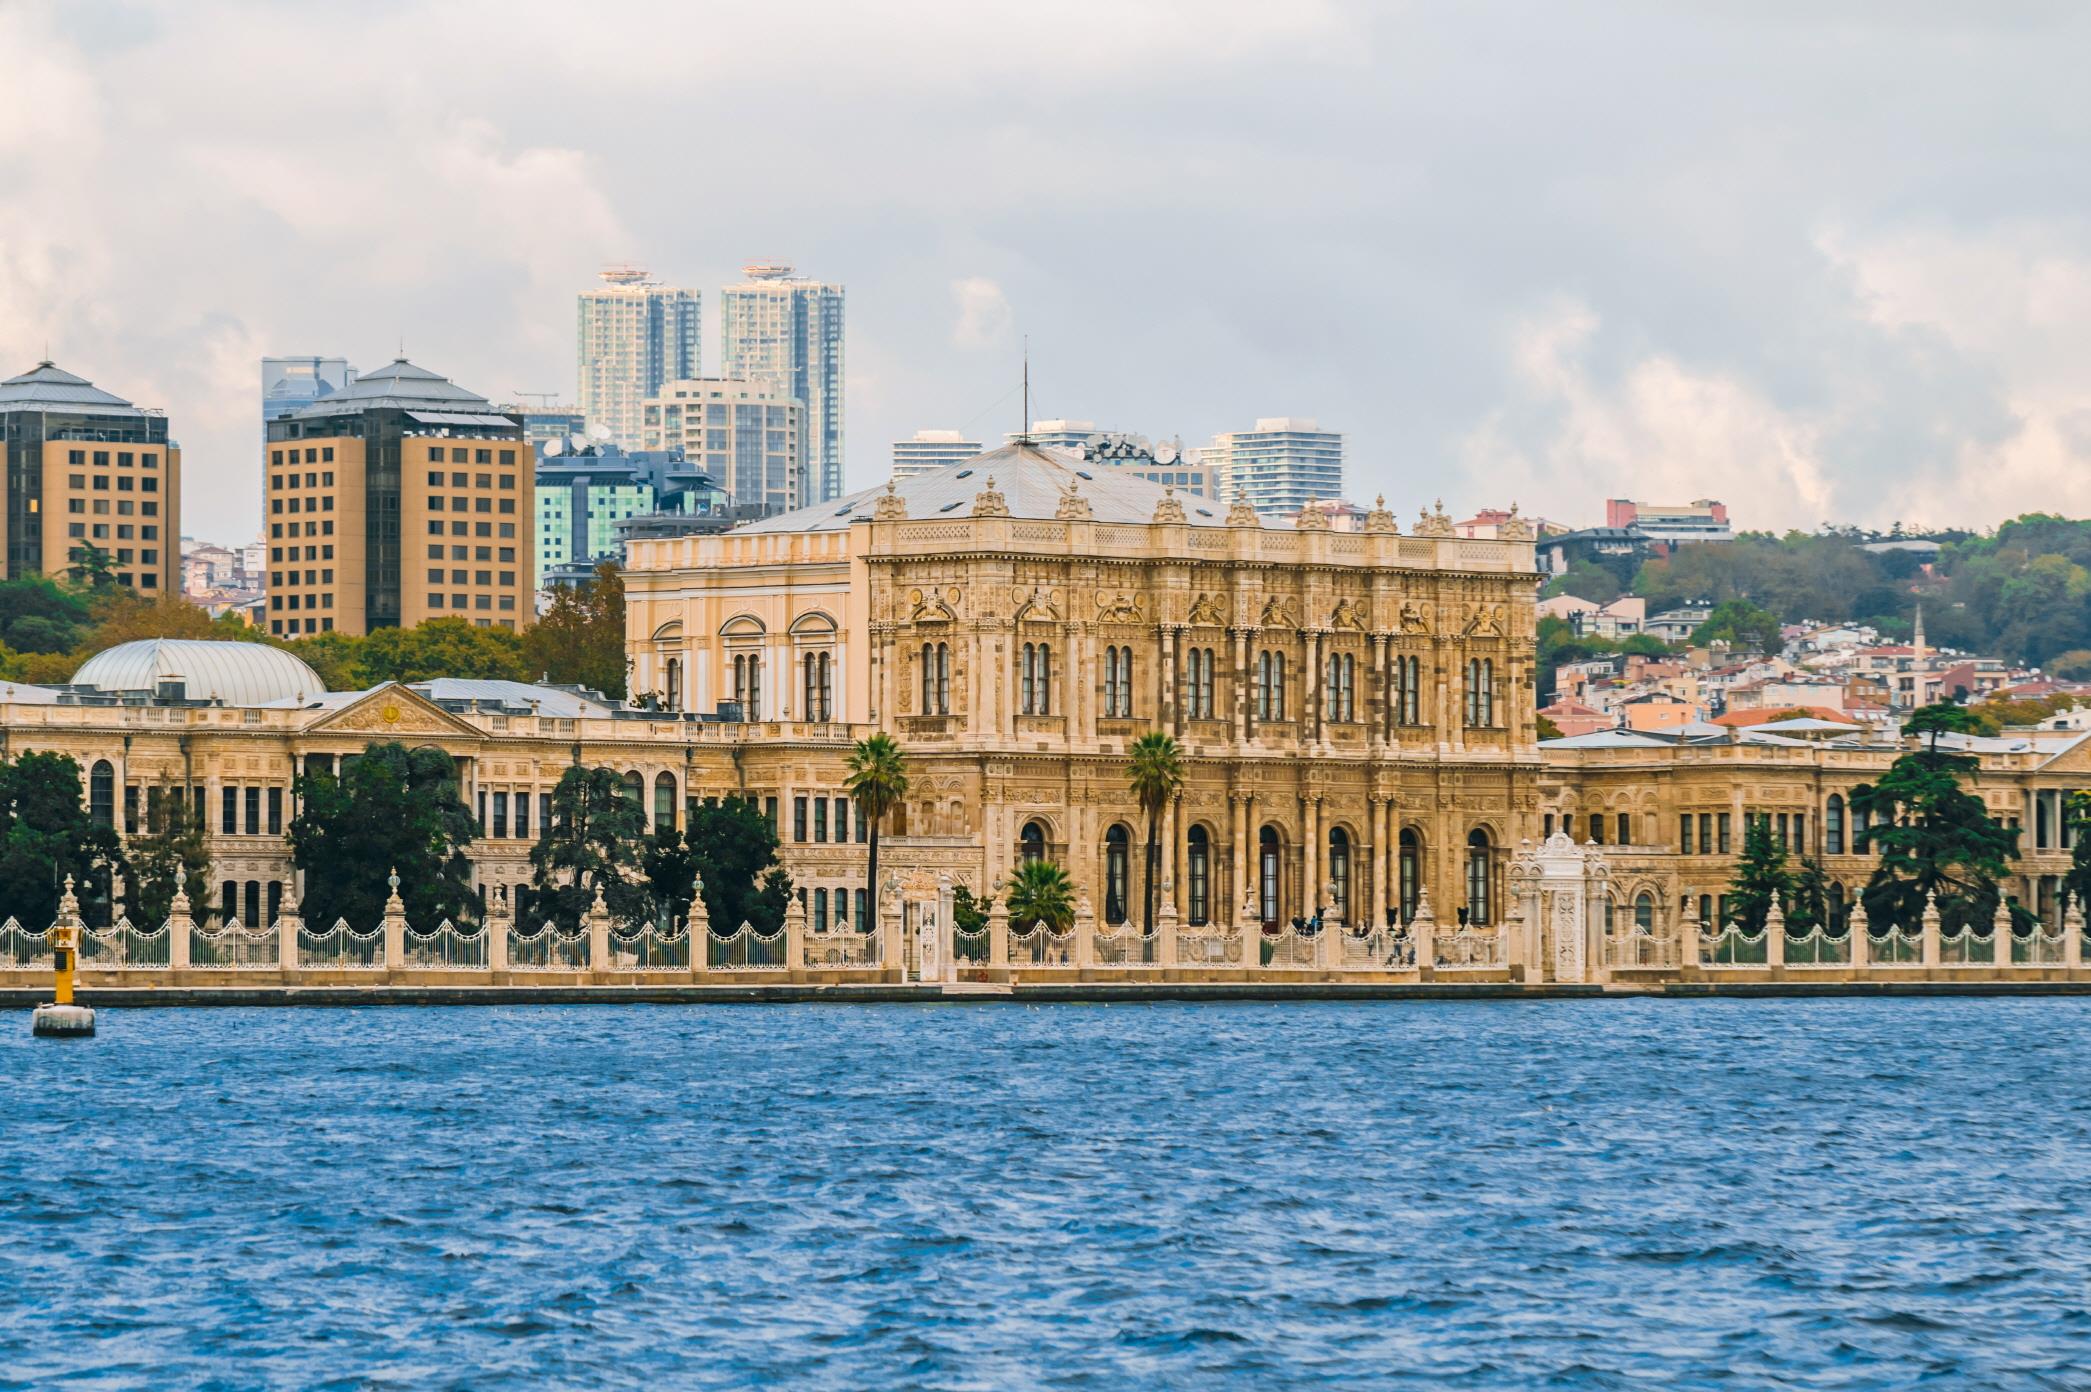 돌마바흐체 궁전  Dolmabahce Palace